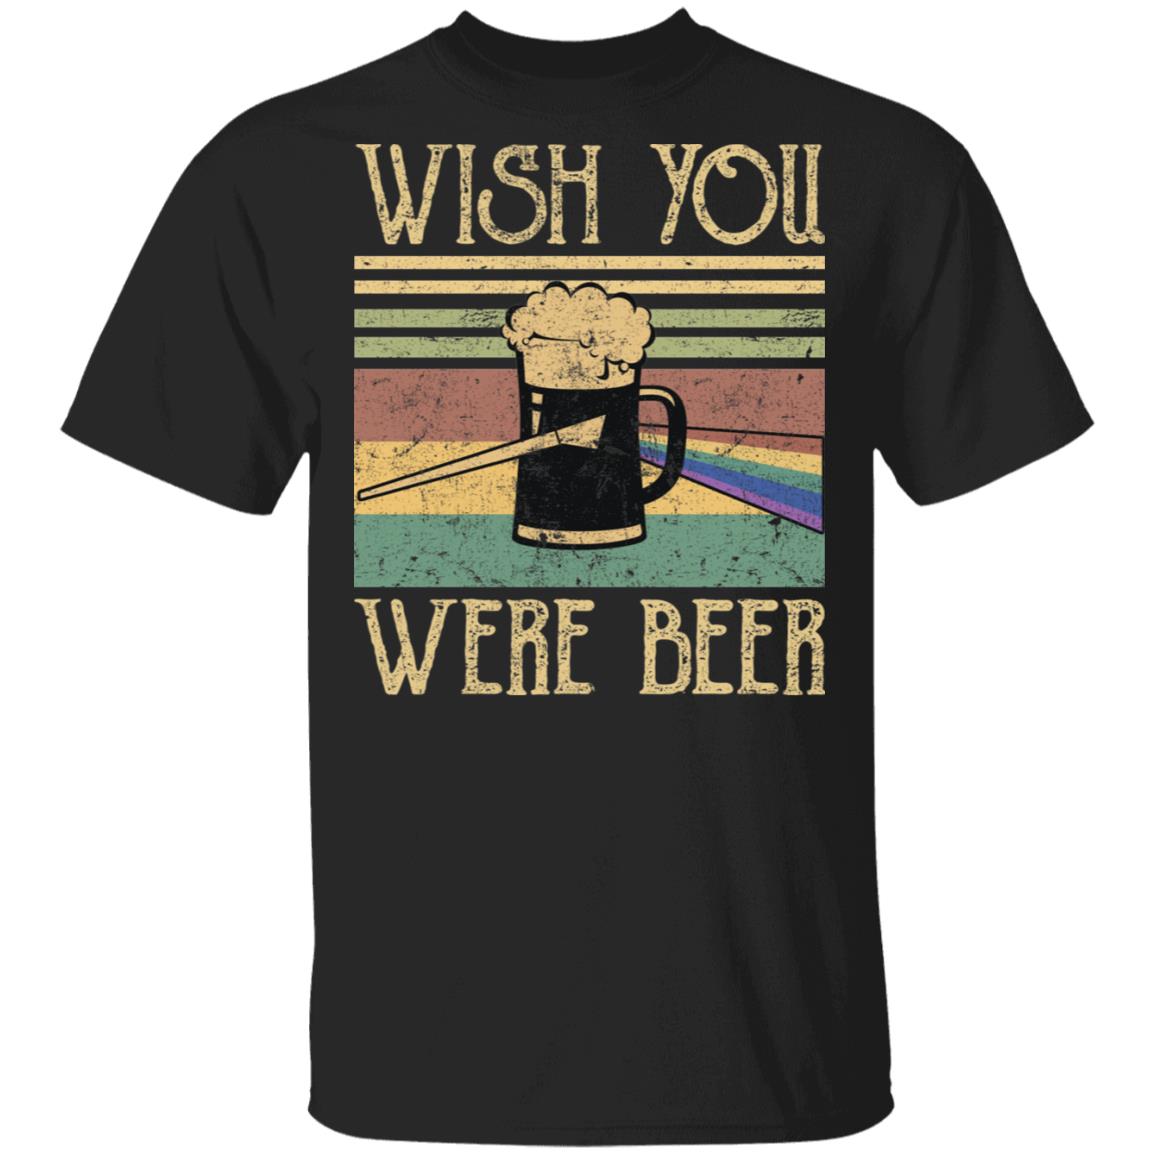 Wish you were beer vintage shirt - Rockatee